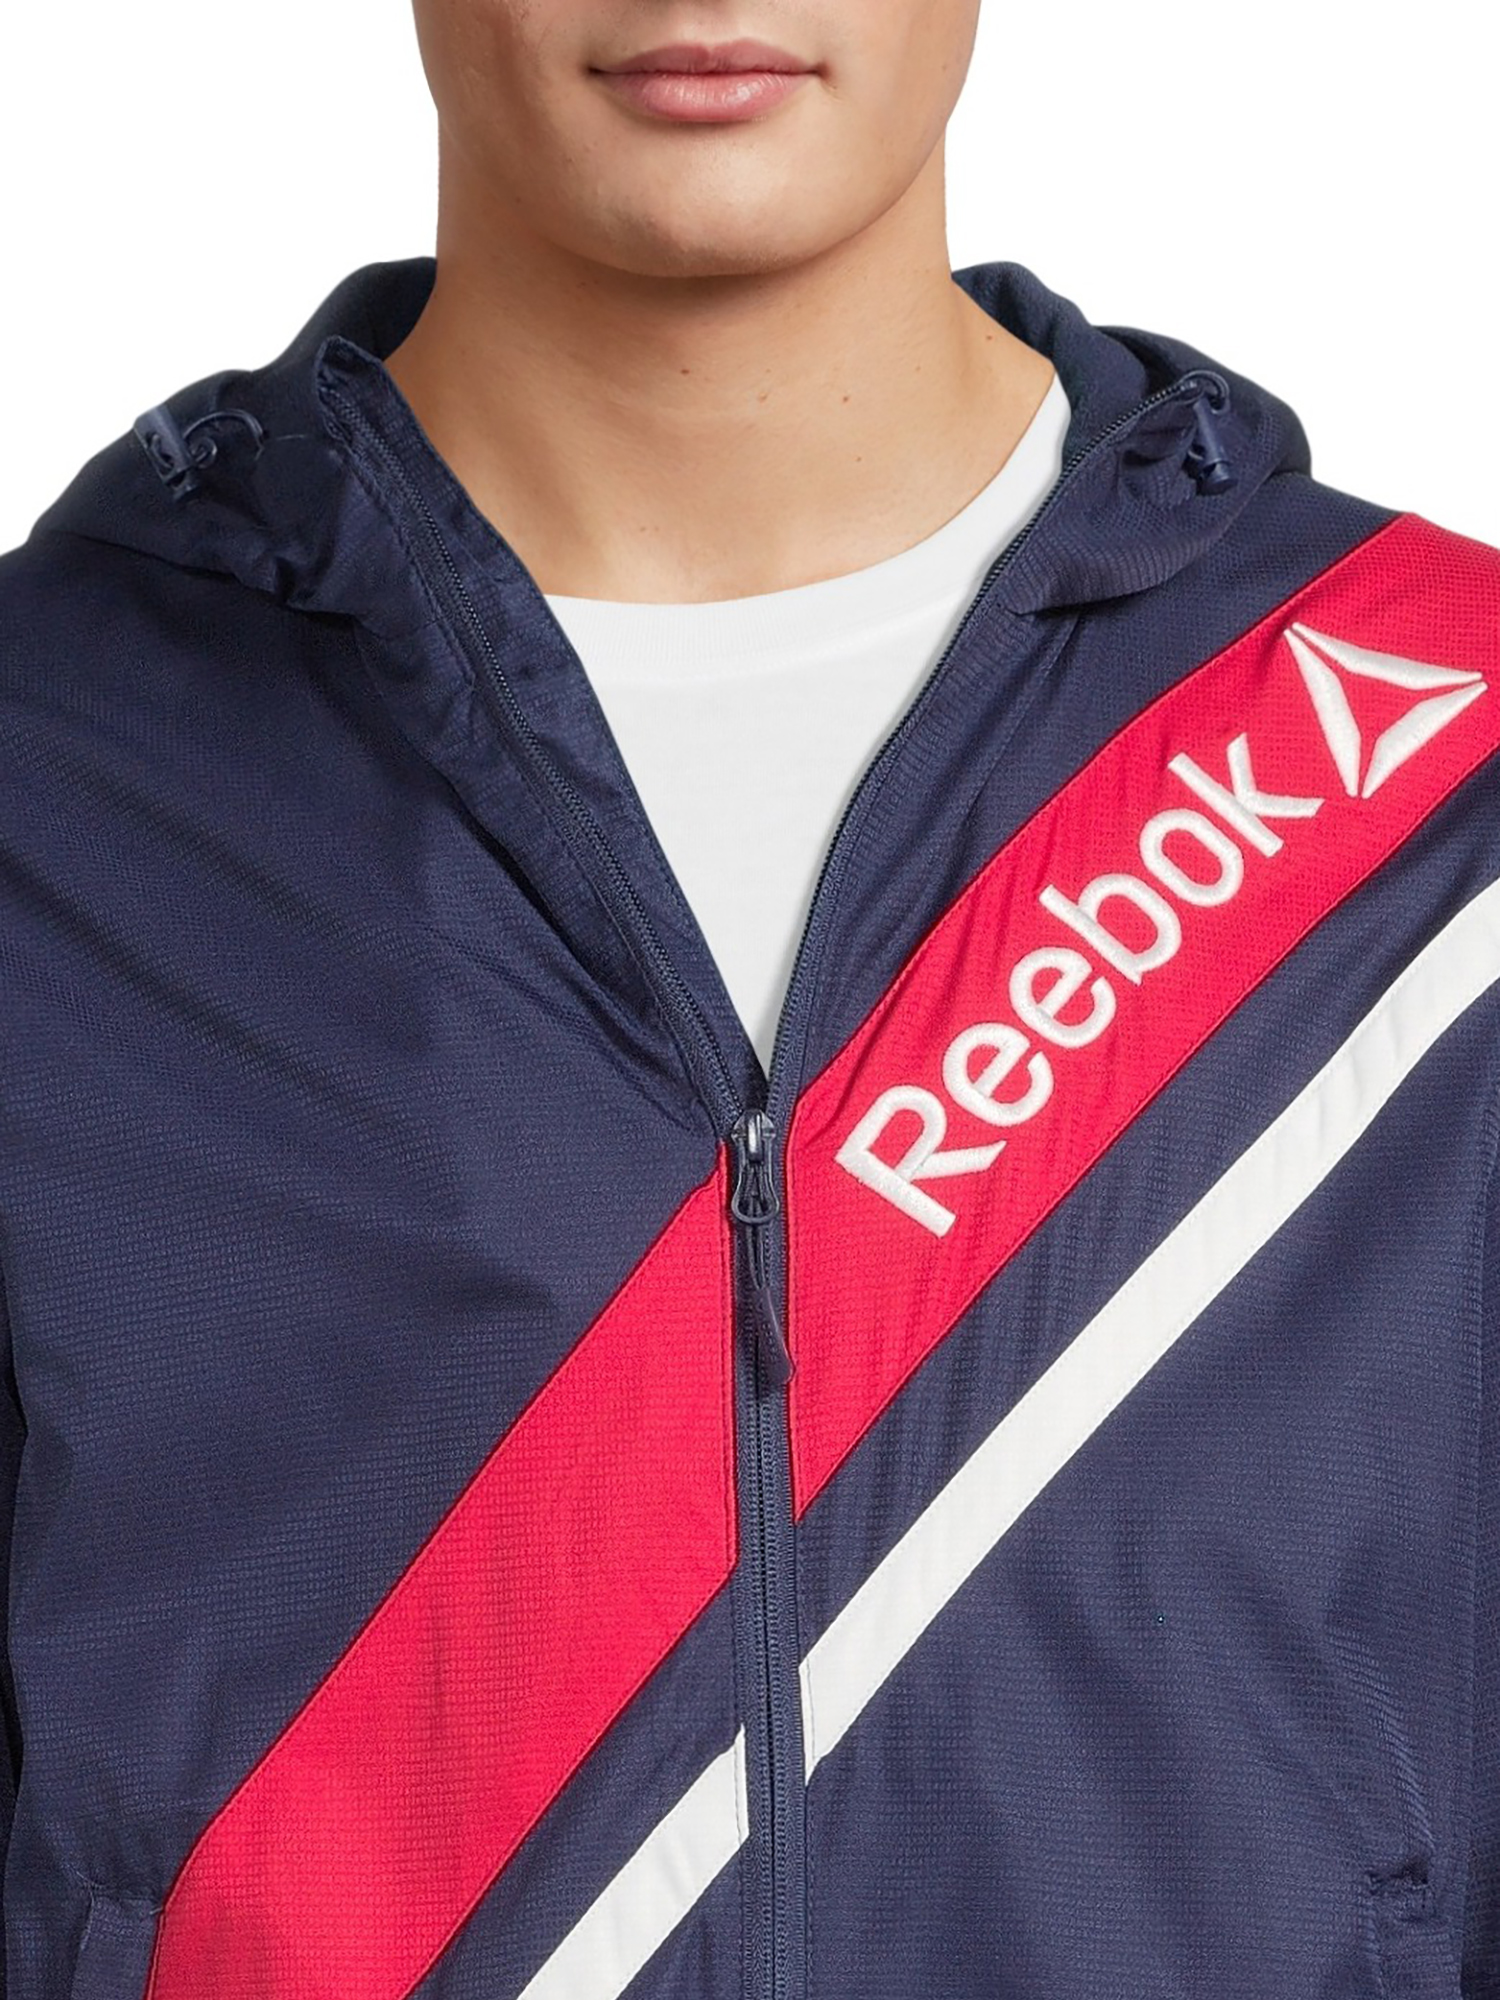 Reebok Men's Retro Windbreaker Jacket, Sizes S-3XL - image 4 of 5